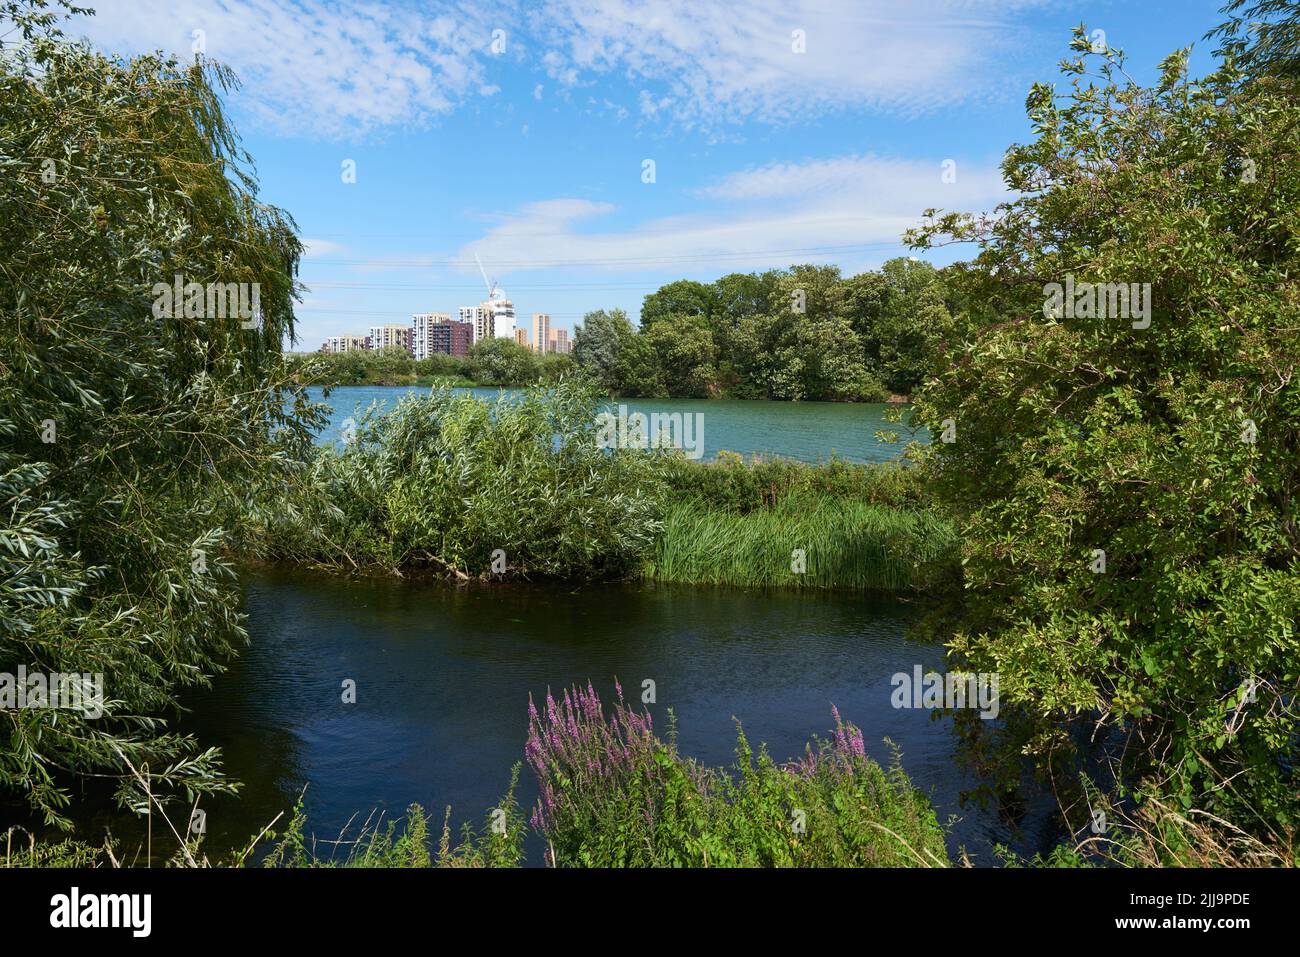 Walthamstow Wetlands en été, dans le nord de Londres, avec de nouveaux appartements à distance Banque D'Images